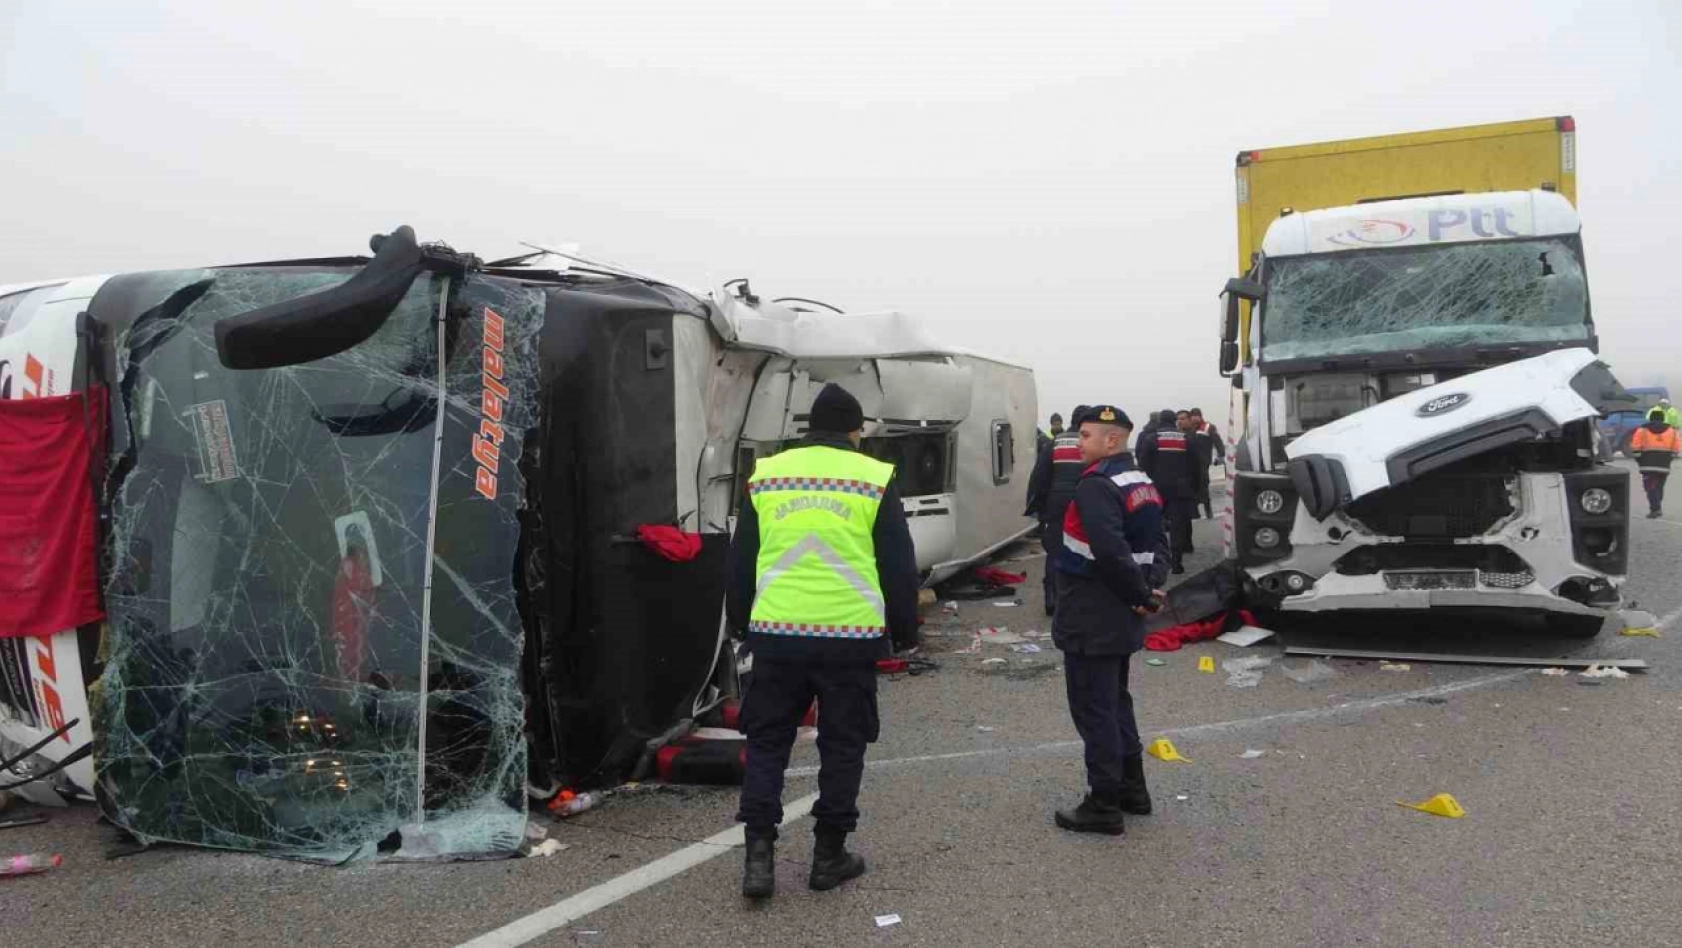 Malatya'daki otobüs kazasıyla ilgili soruşturma başlatıldı